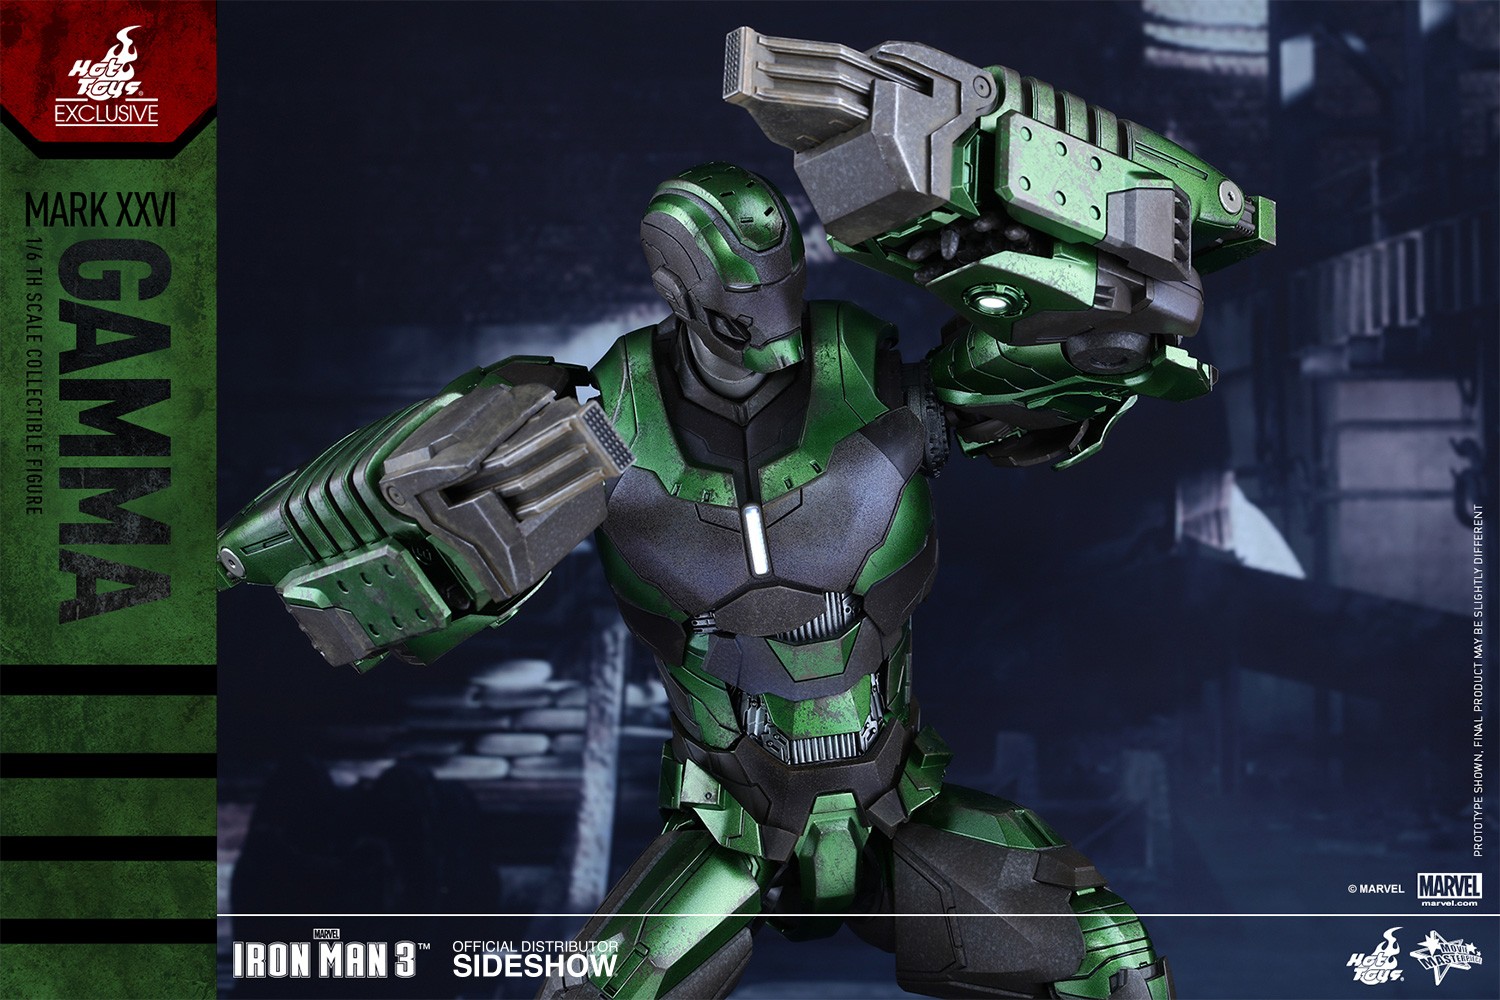 Iron Man Mark XXVI - Gamma Exclusive Edition (Prototype Shown) View 10